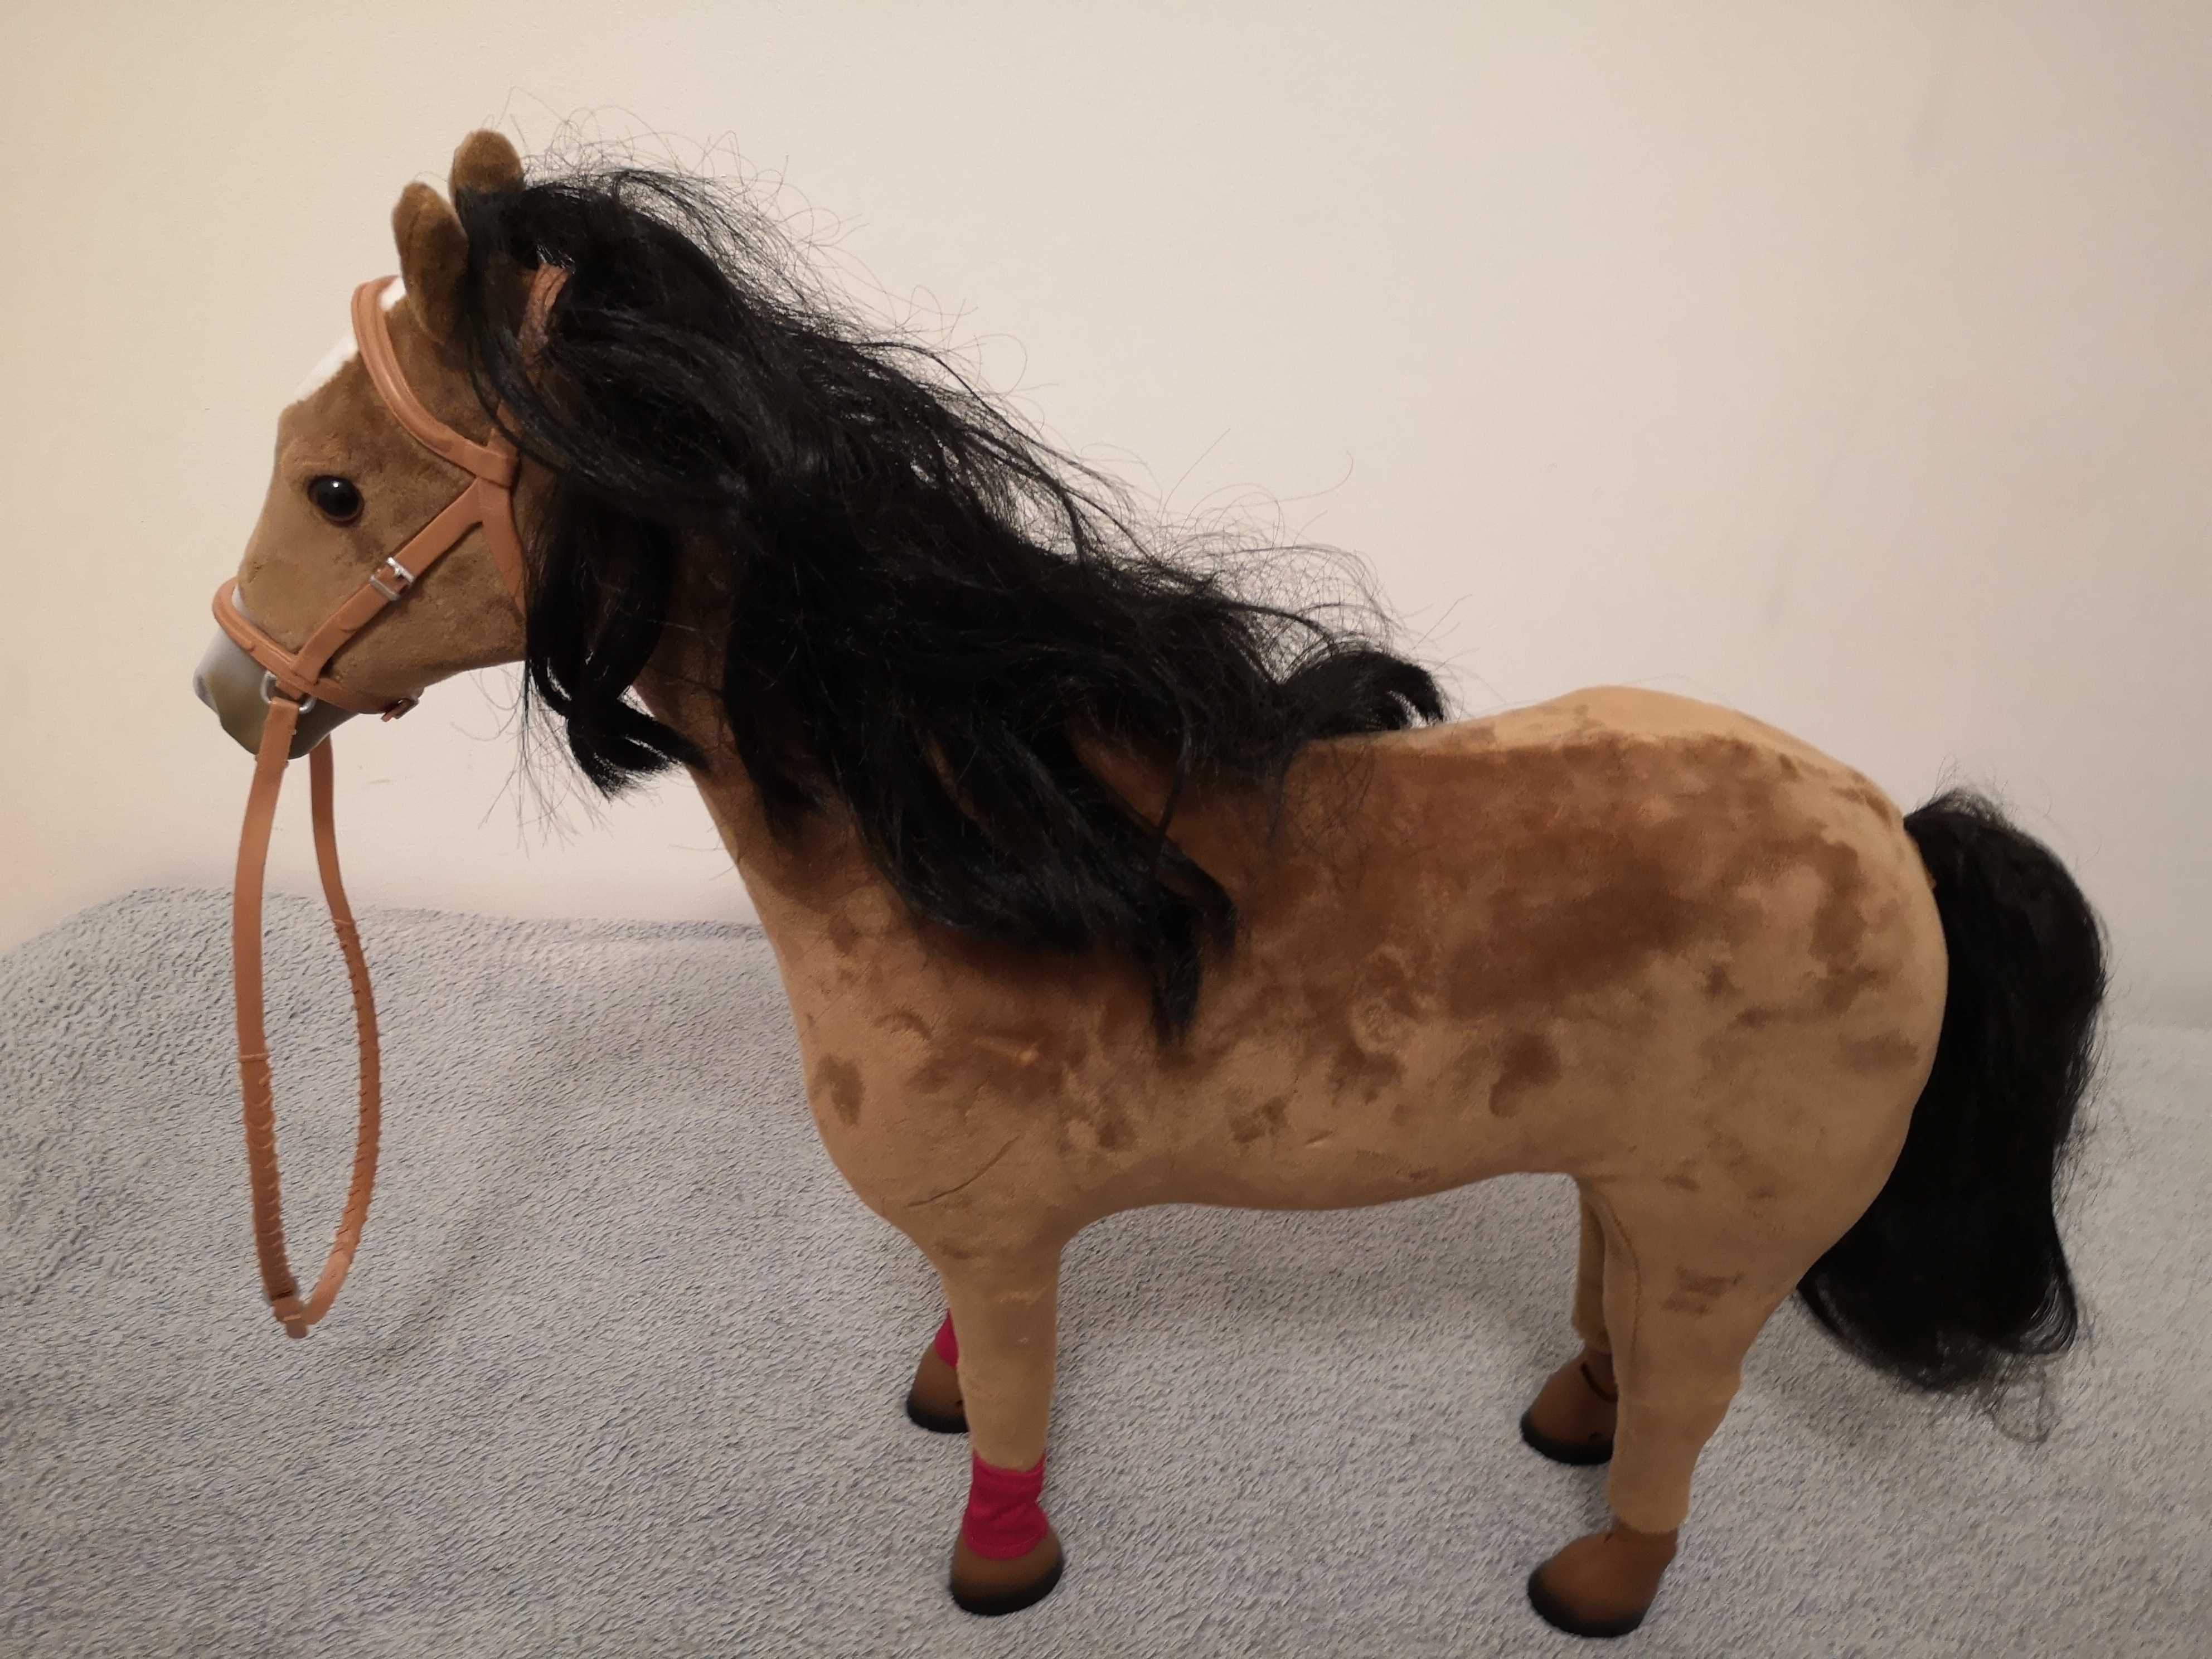 zabawka koń duży 50 cm ruchome nogi i kopytka